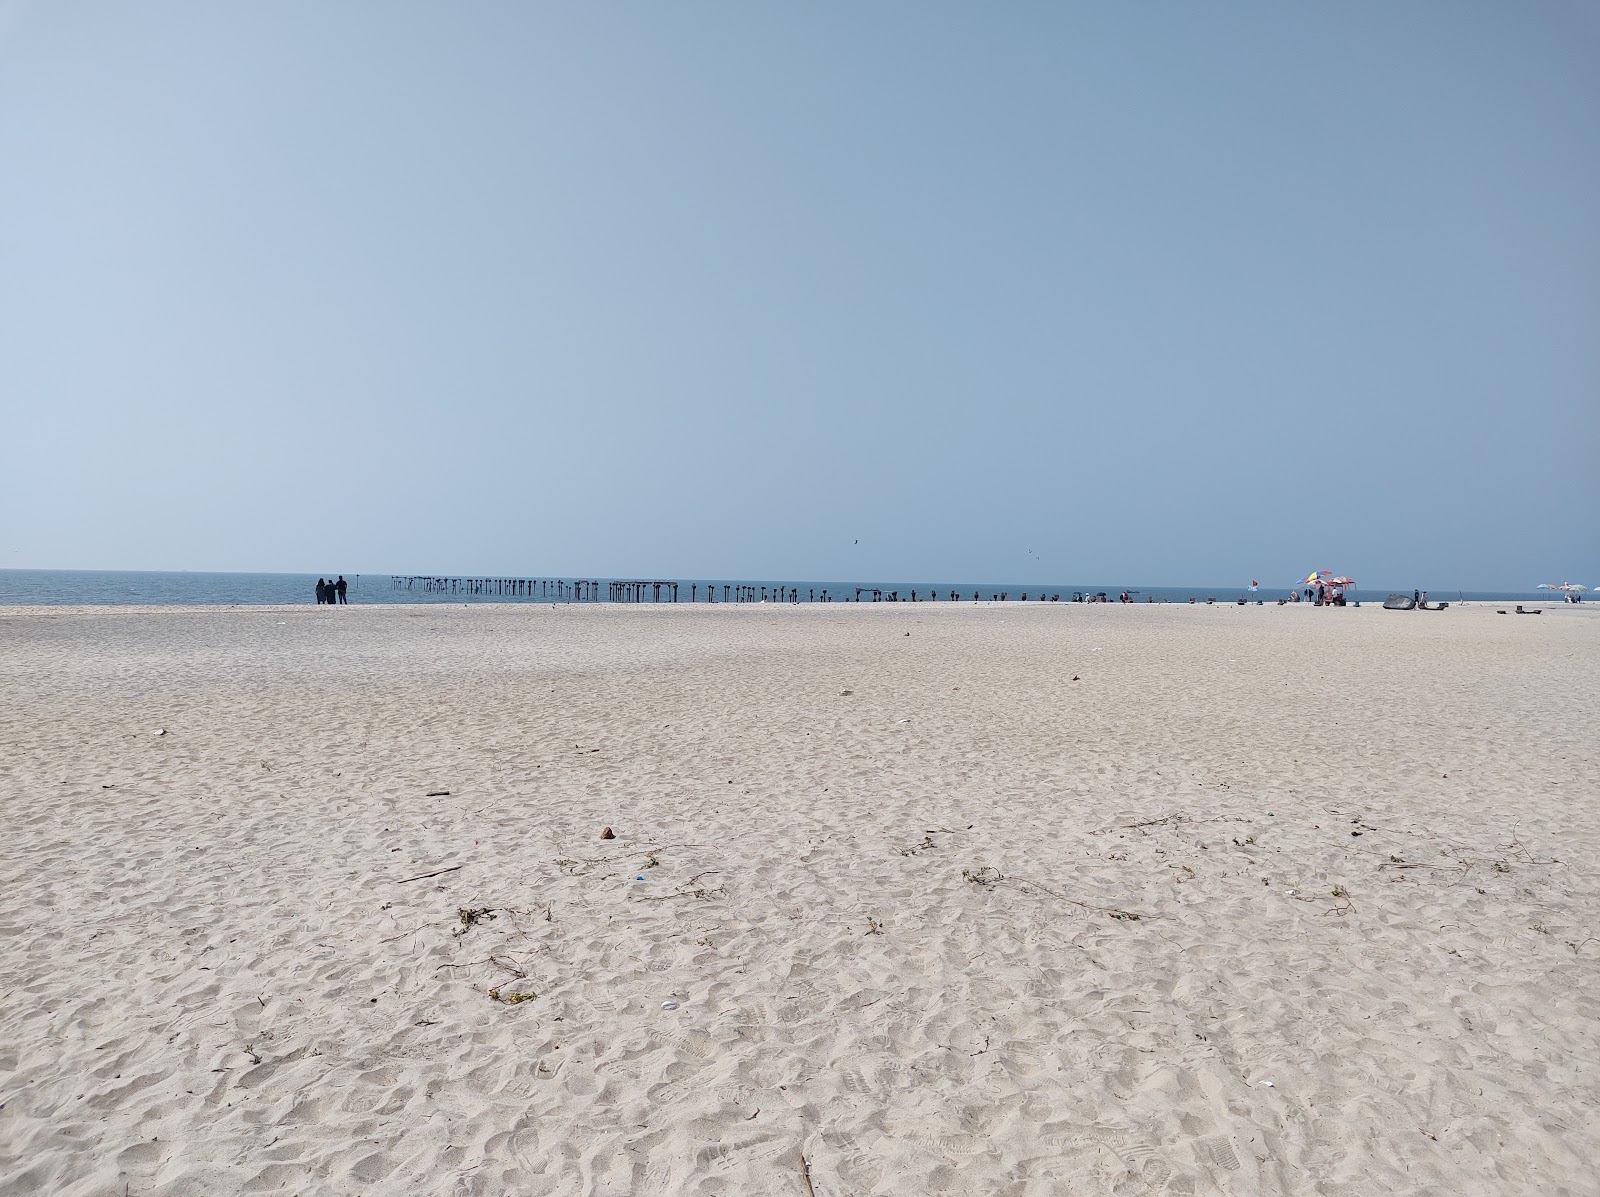 Fotografie cu Alappuzha Beach - locul popular printre cunoscătorii de relaxare